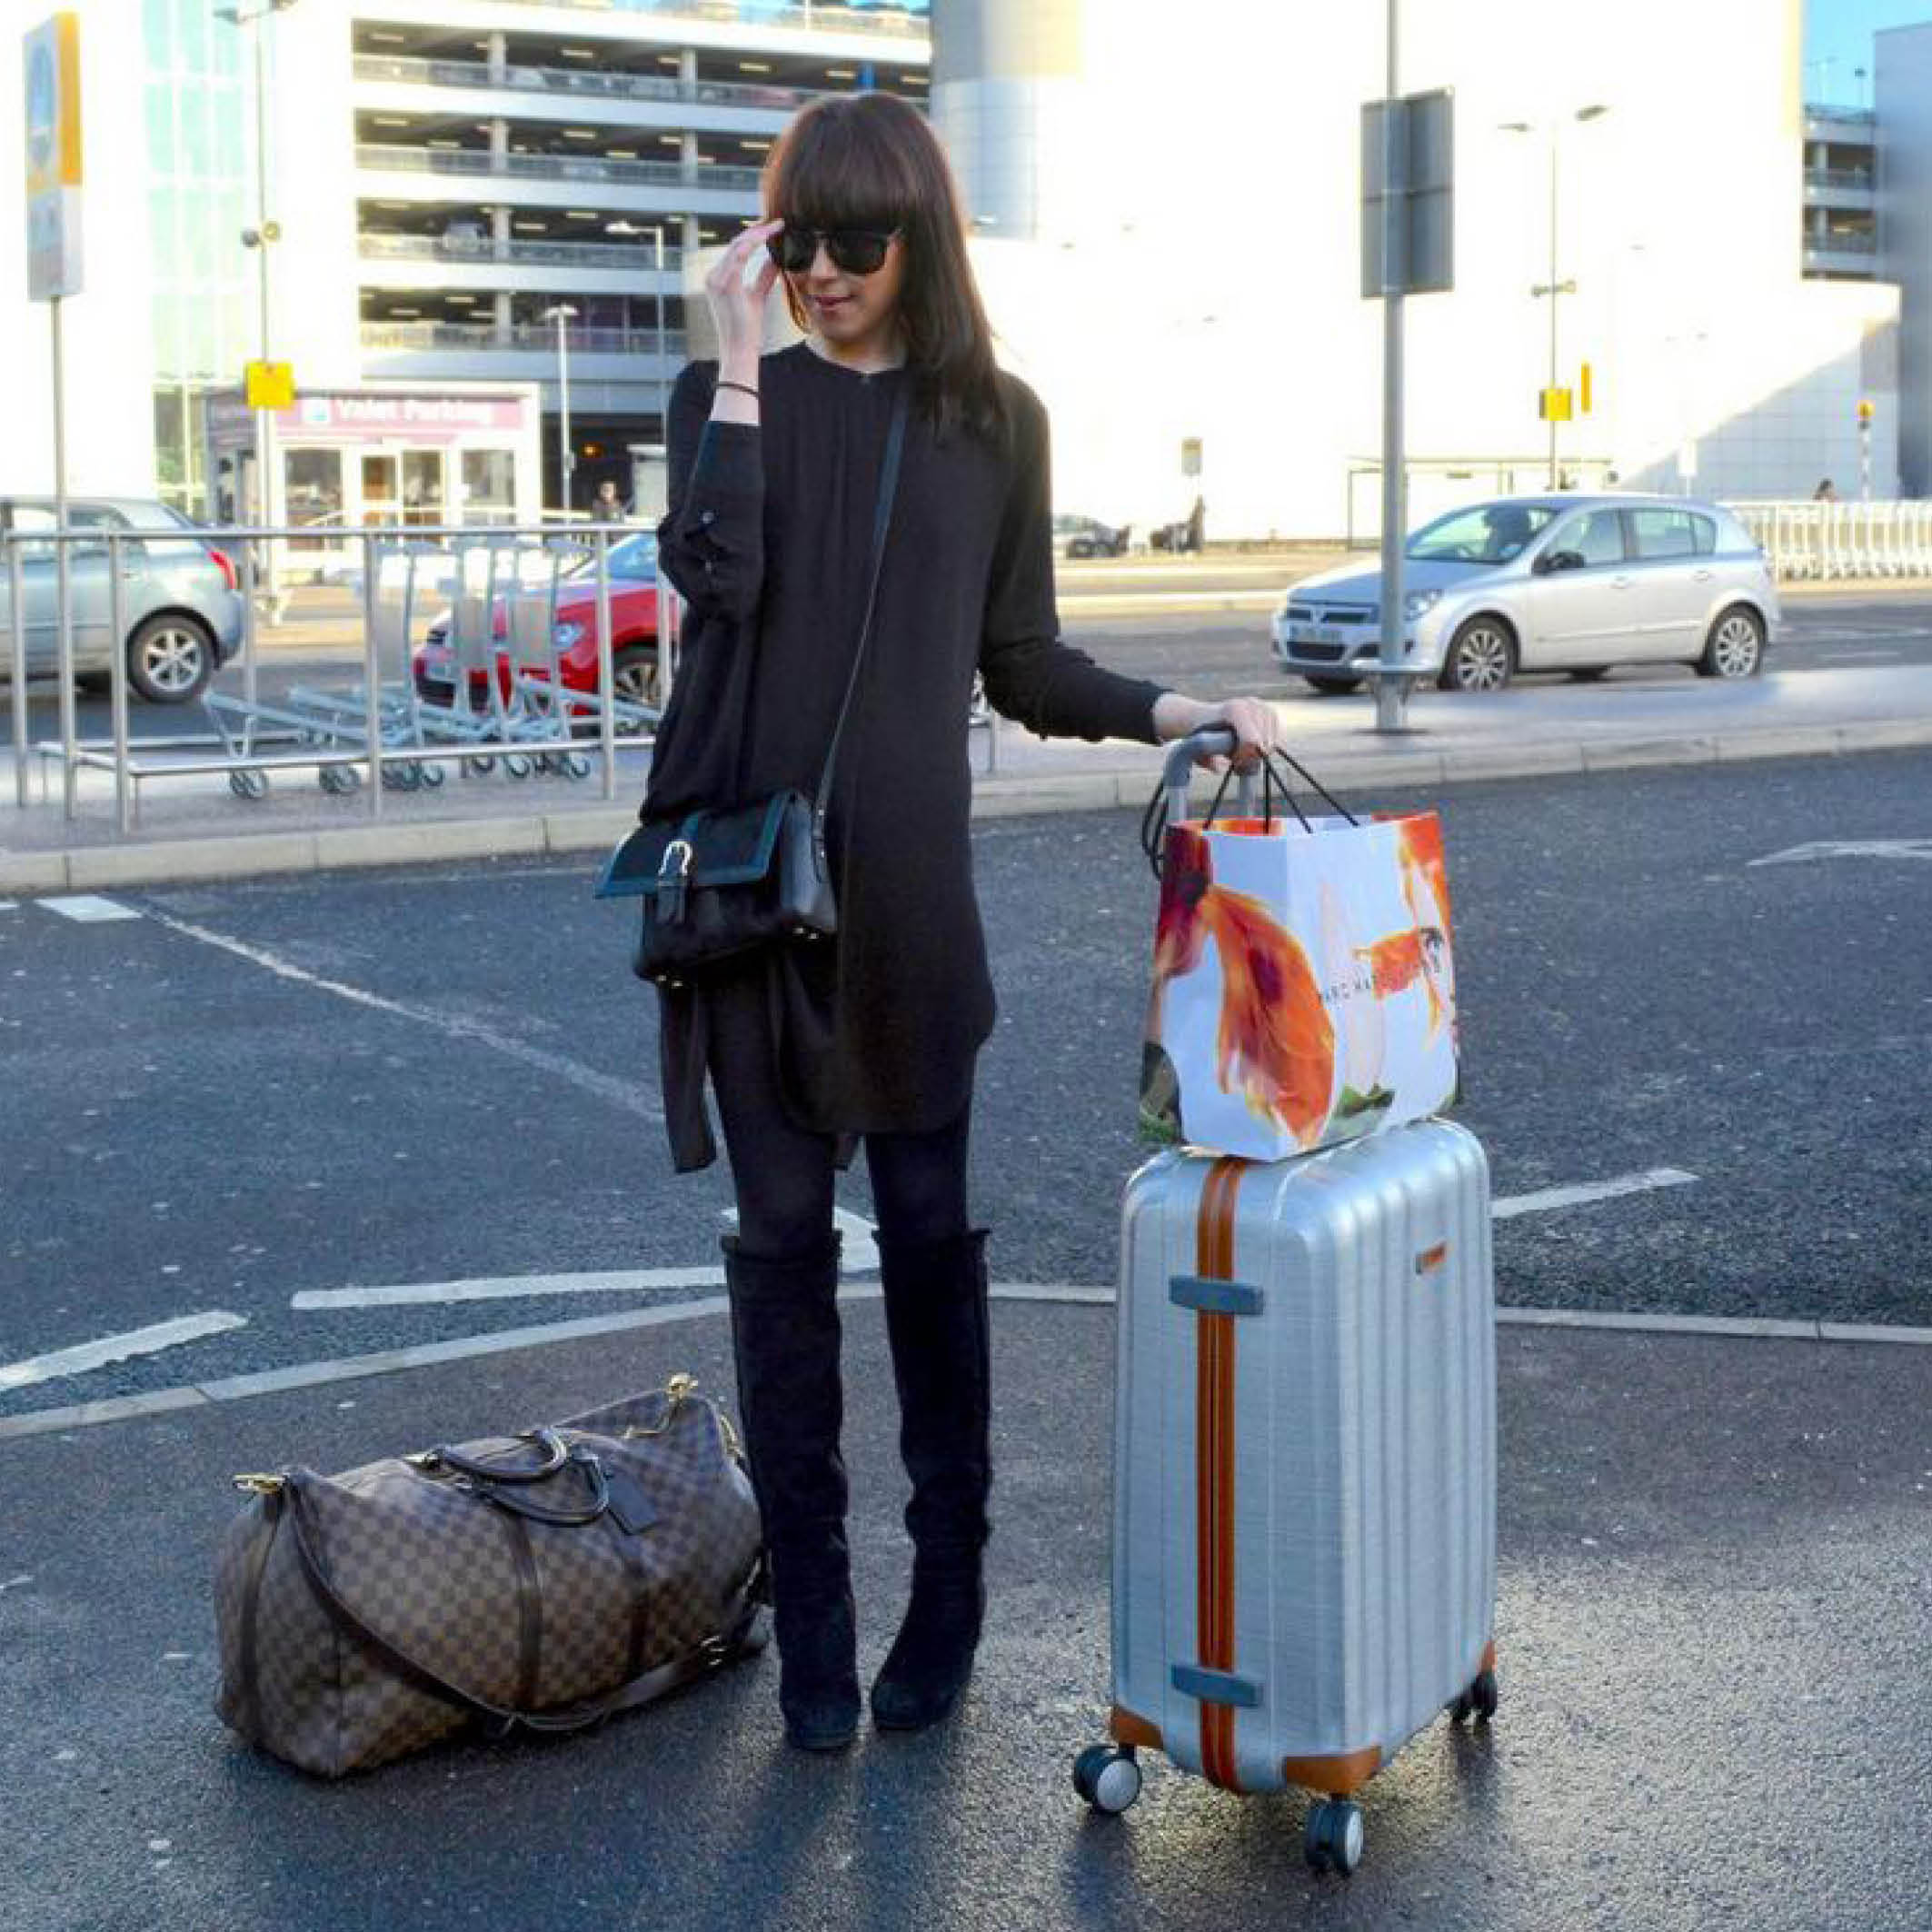 Opeenvolgend Luidspreker Praten tegen Samsonite on Twitter: "Lorna Andrews of @Lorna_Luxe spotted with her Samsonite  Lite-Cube DLX at #London airport! #Samsonite #MySamsonite  http://t.co/kNm03eiUUJ" / Twitter